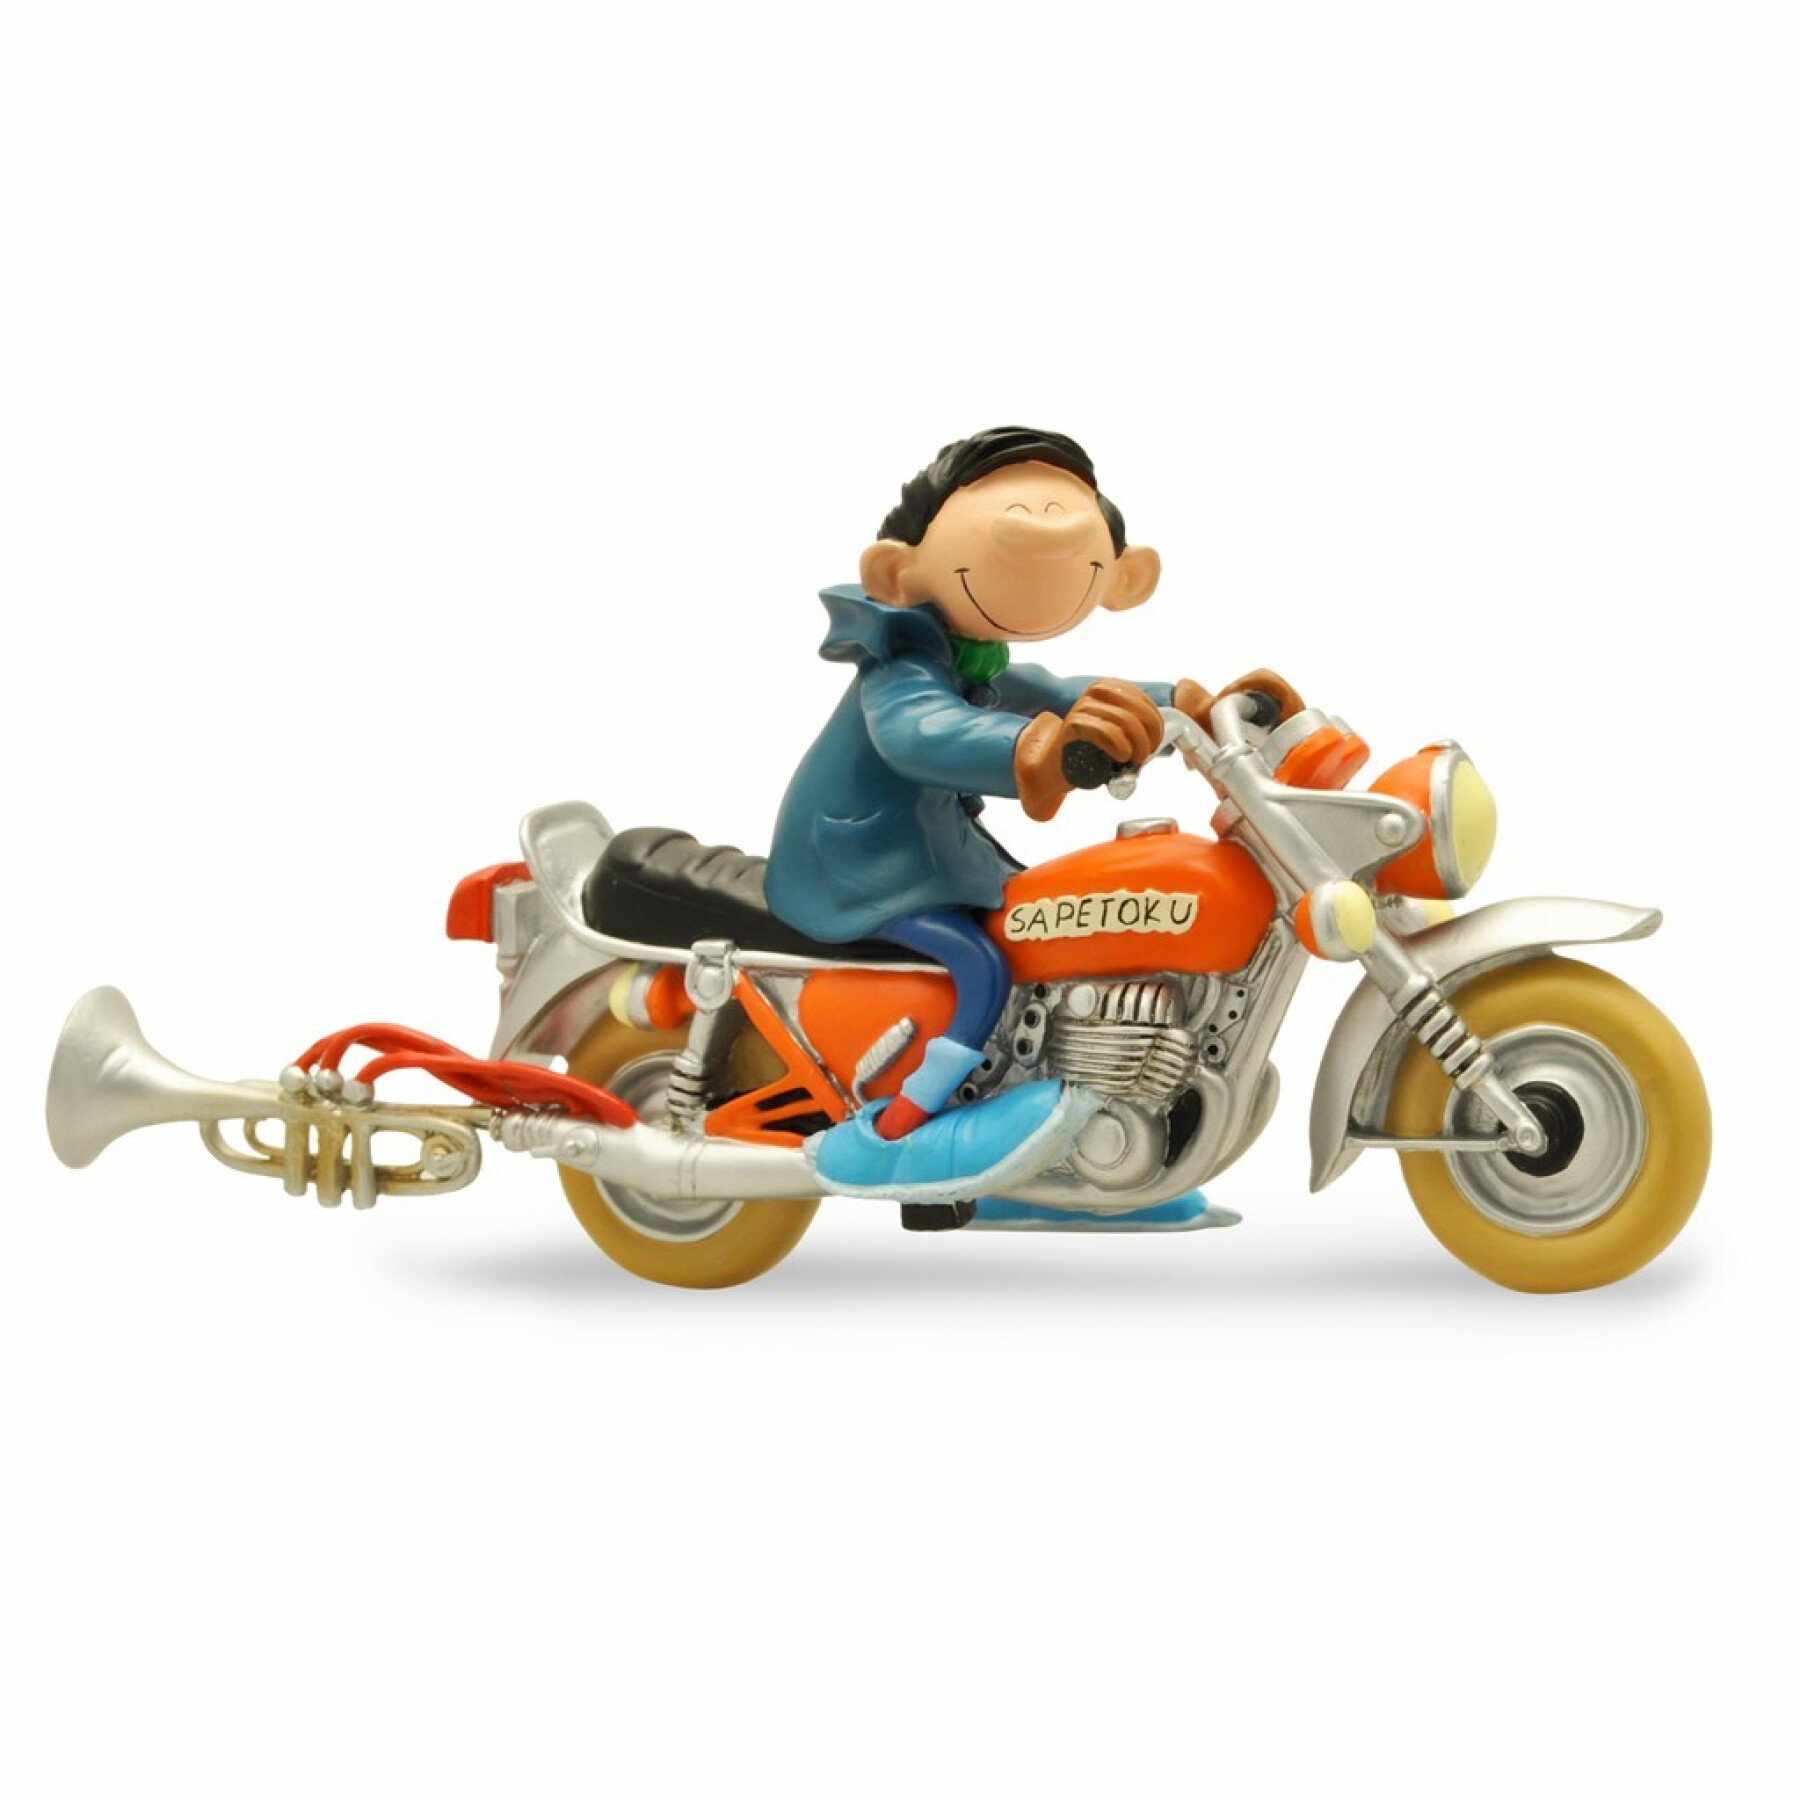 Figurine gaston et la moto sapetoku Plastoy